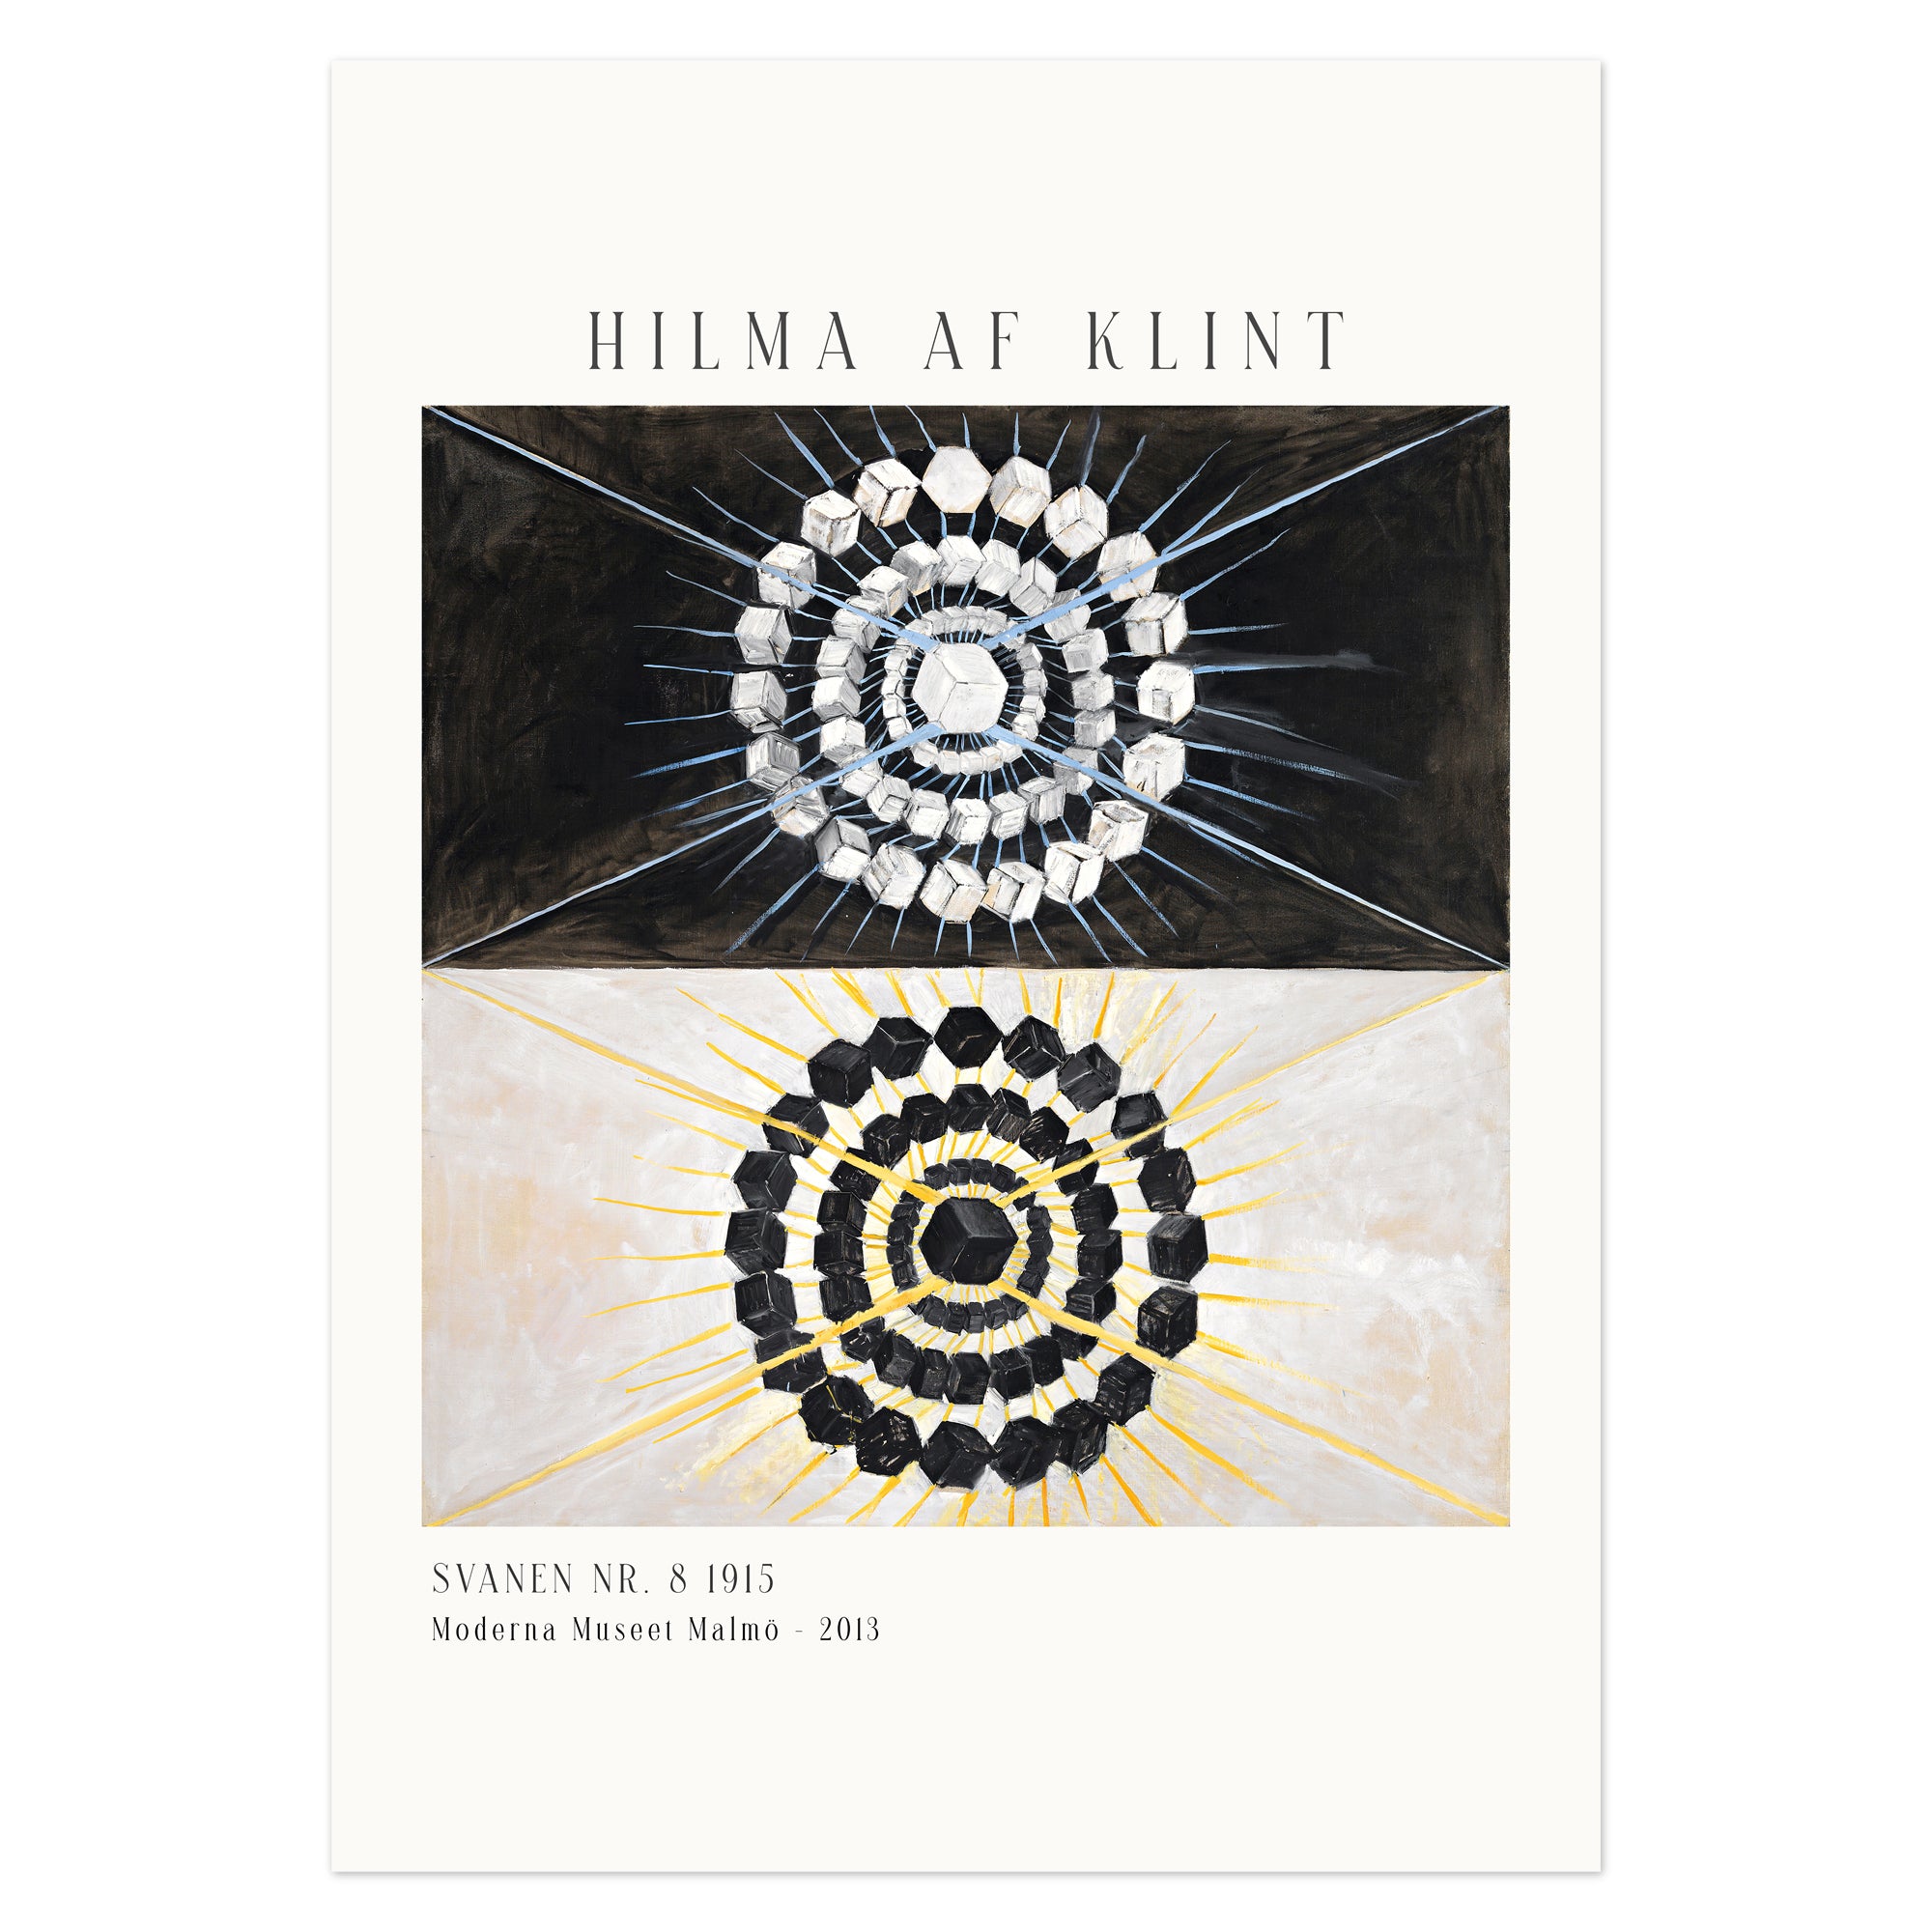 Hilma af Klint Poster - Svanen nr. 8